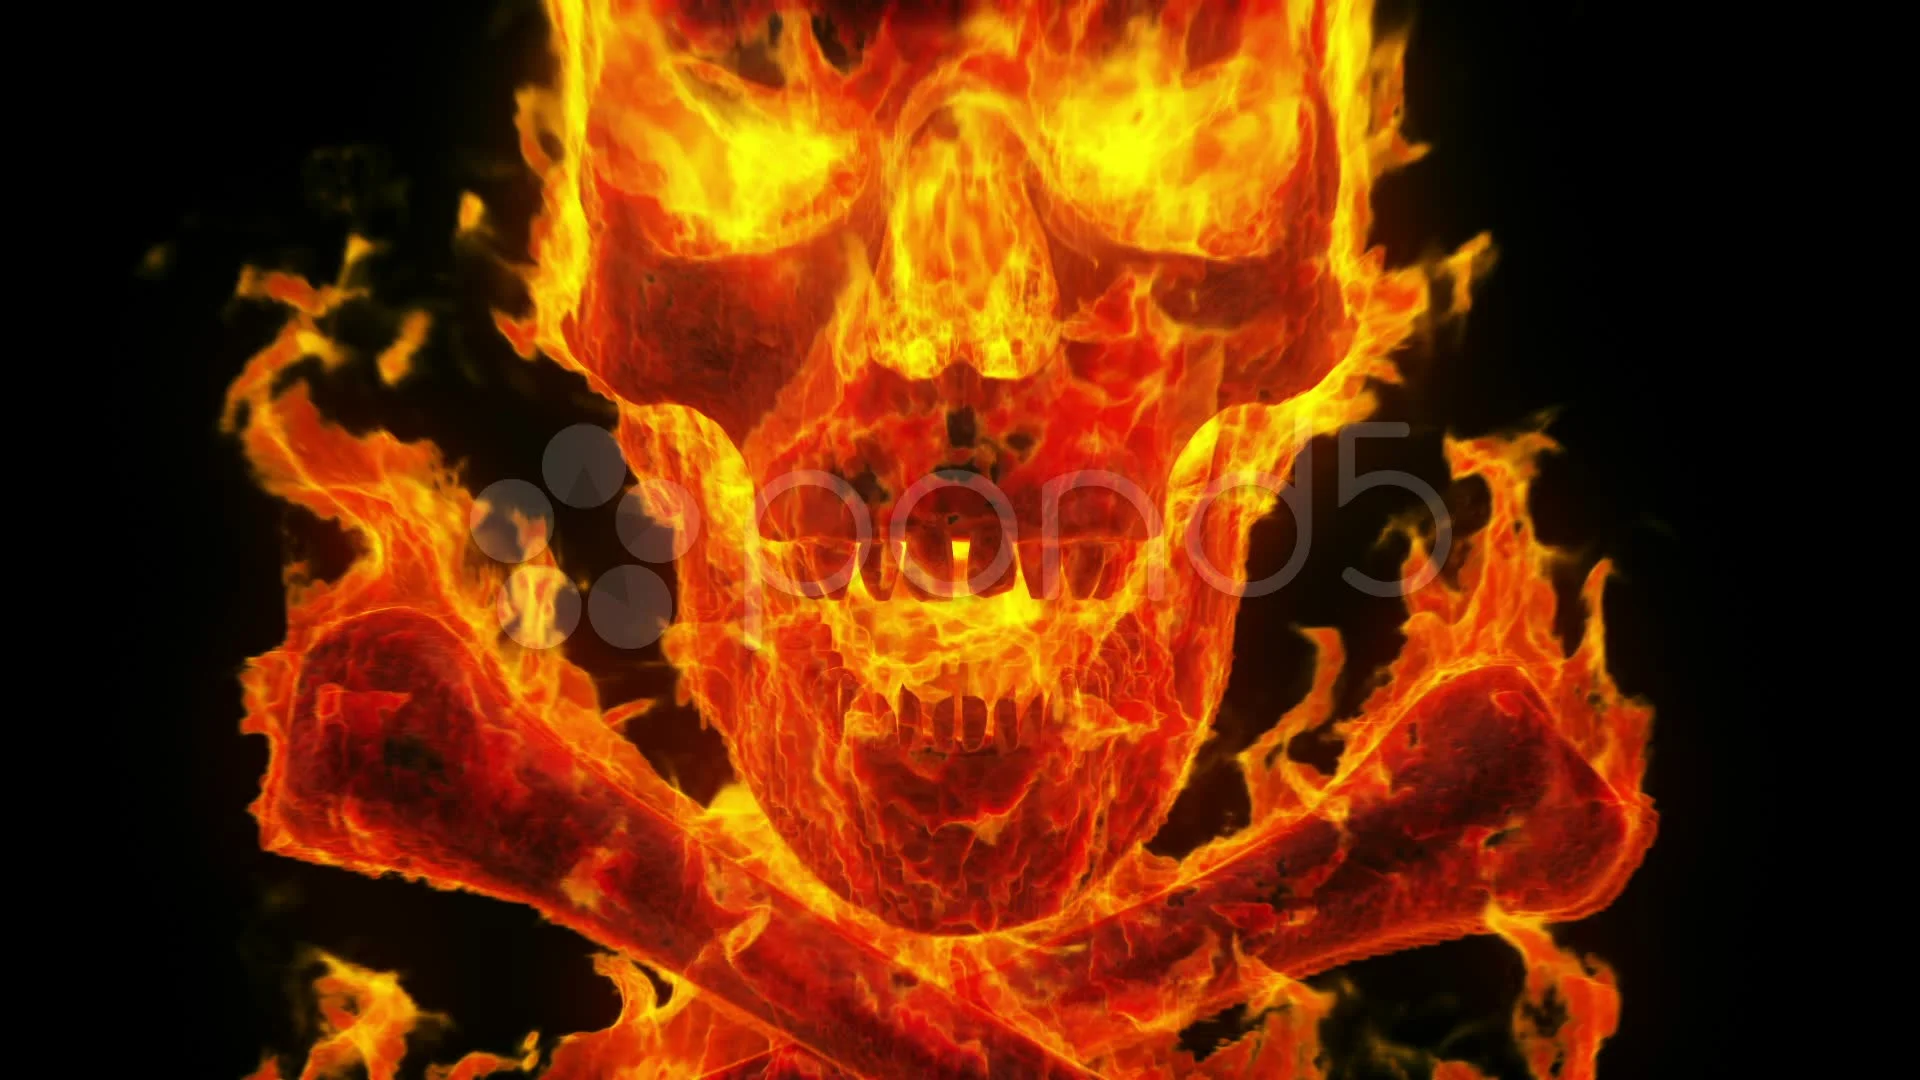 burning evil skull and crossbones